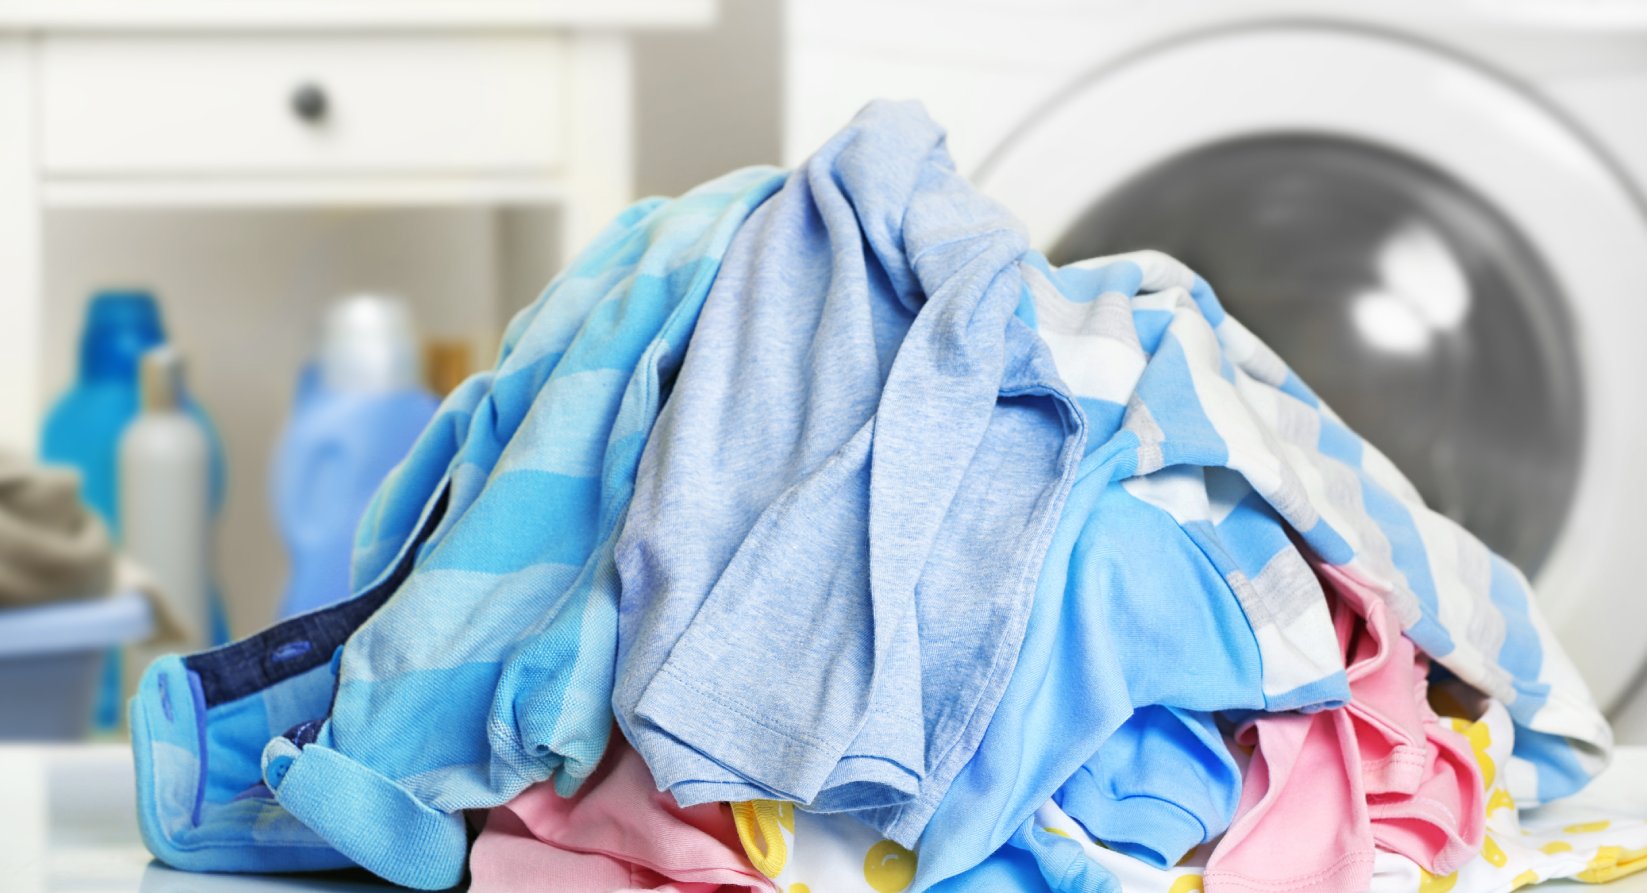 Pilha de roupa suja sobre uma bancada, com uma máquina de lavar roupa ao fundo